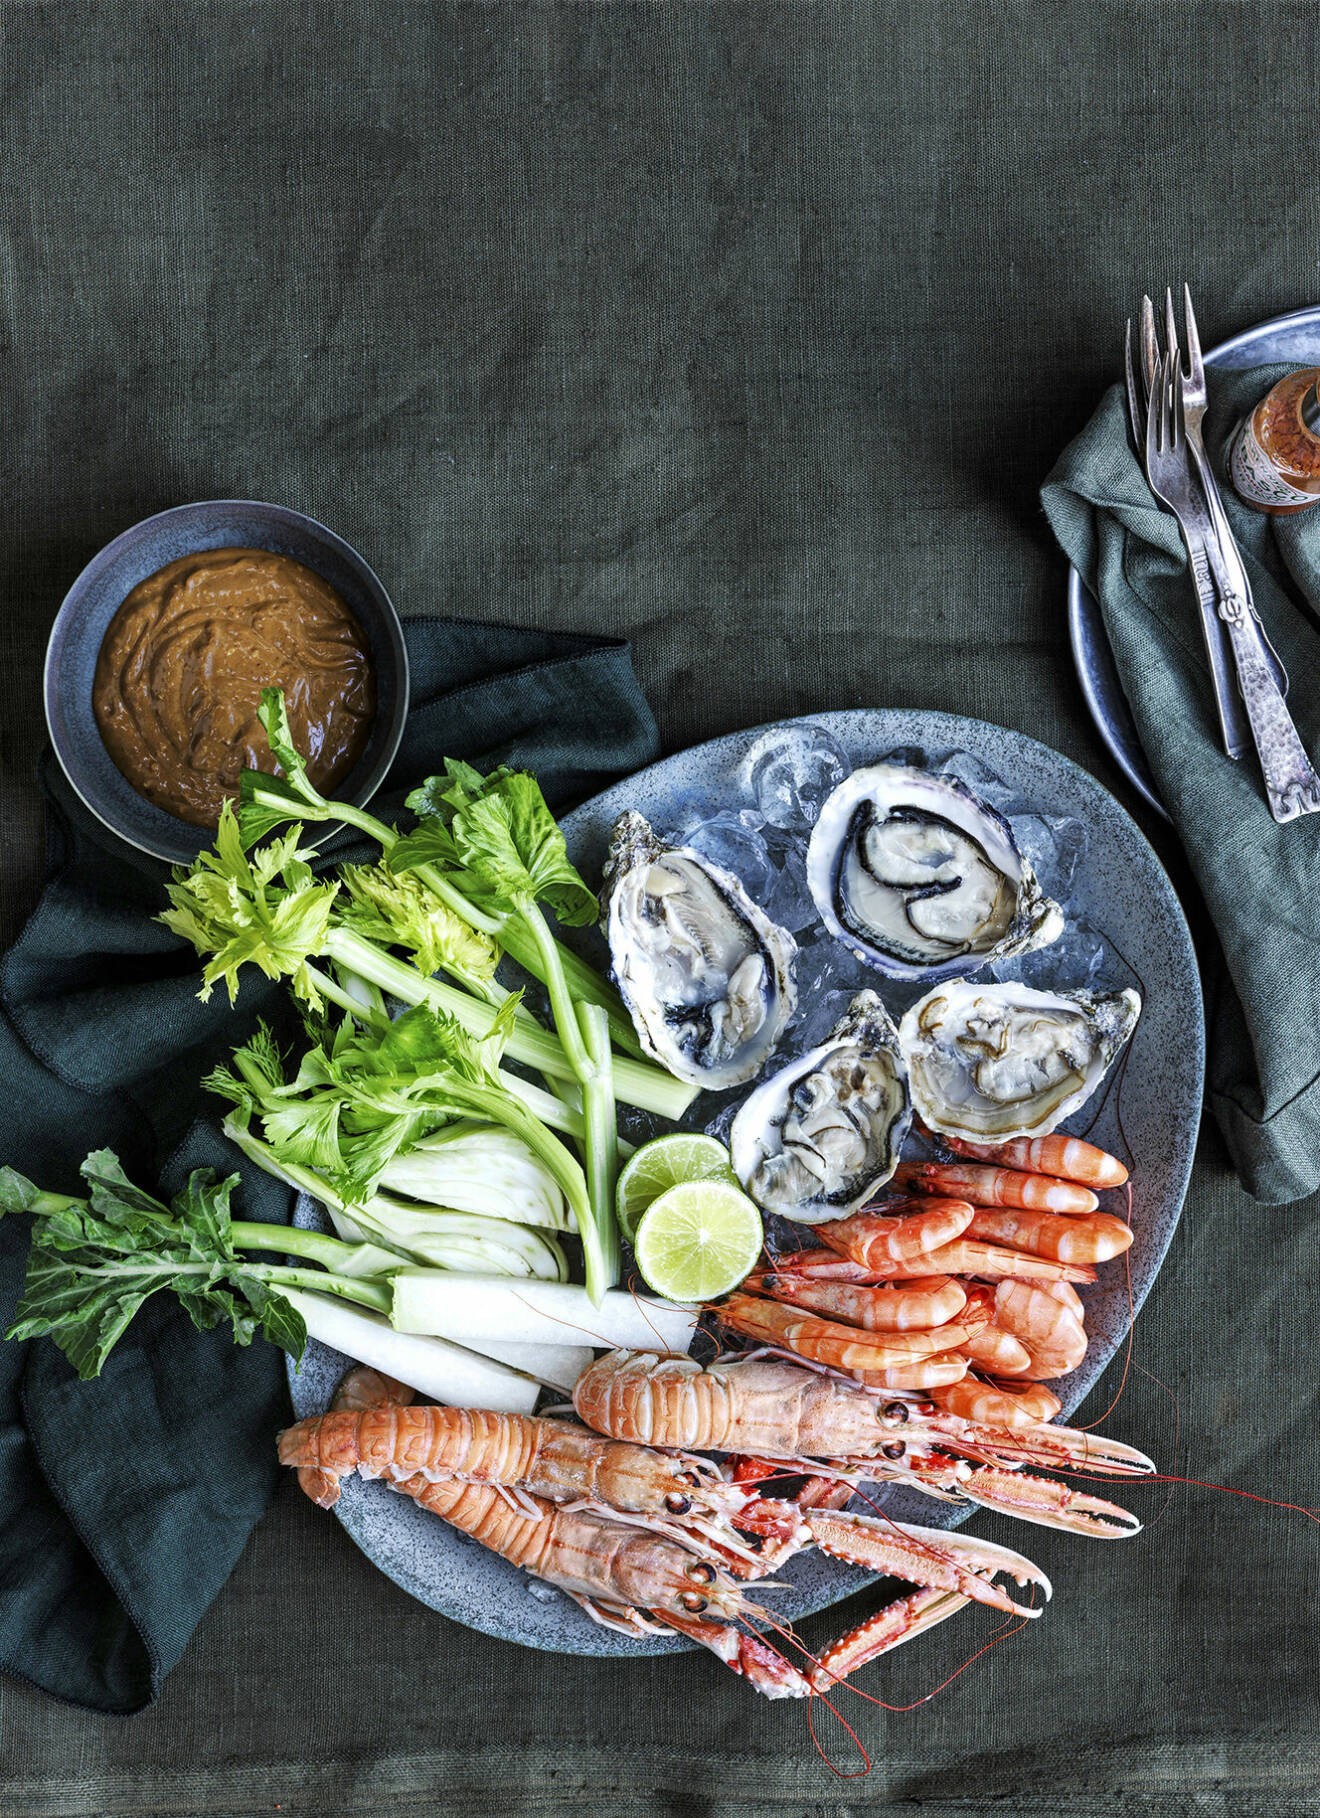 Börja middagen med en lyxig skaldjurstallrik med misomajo